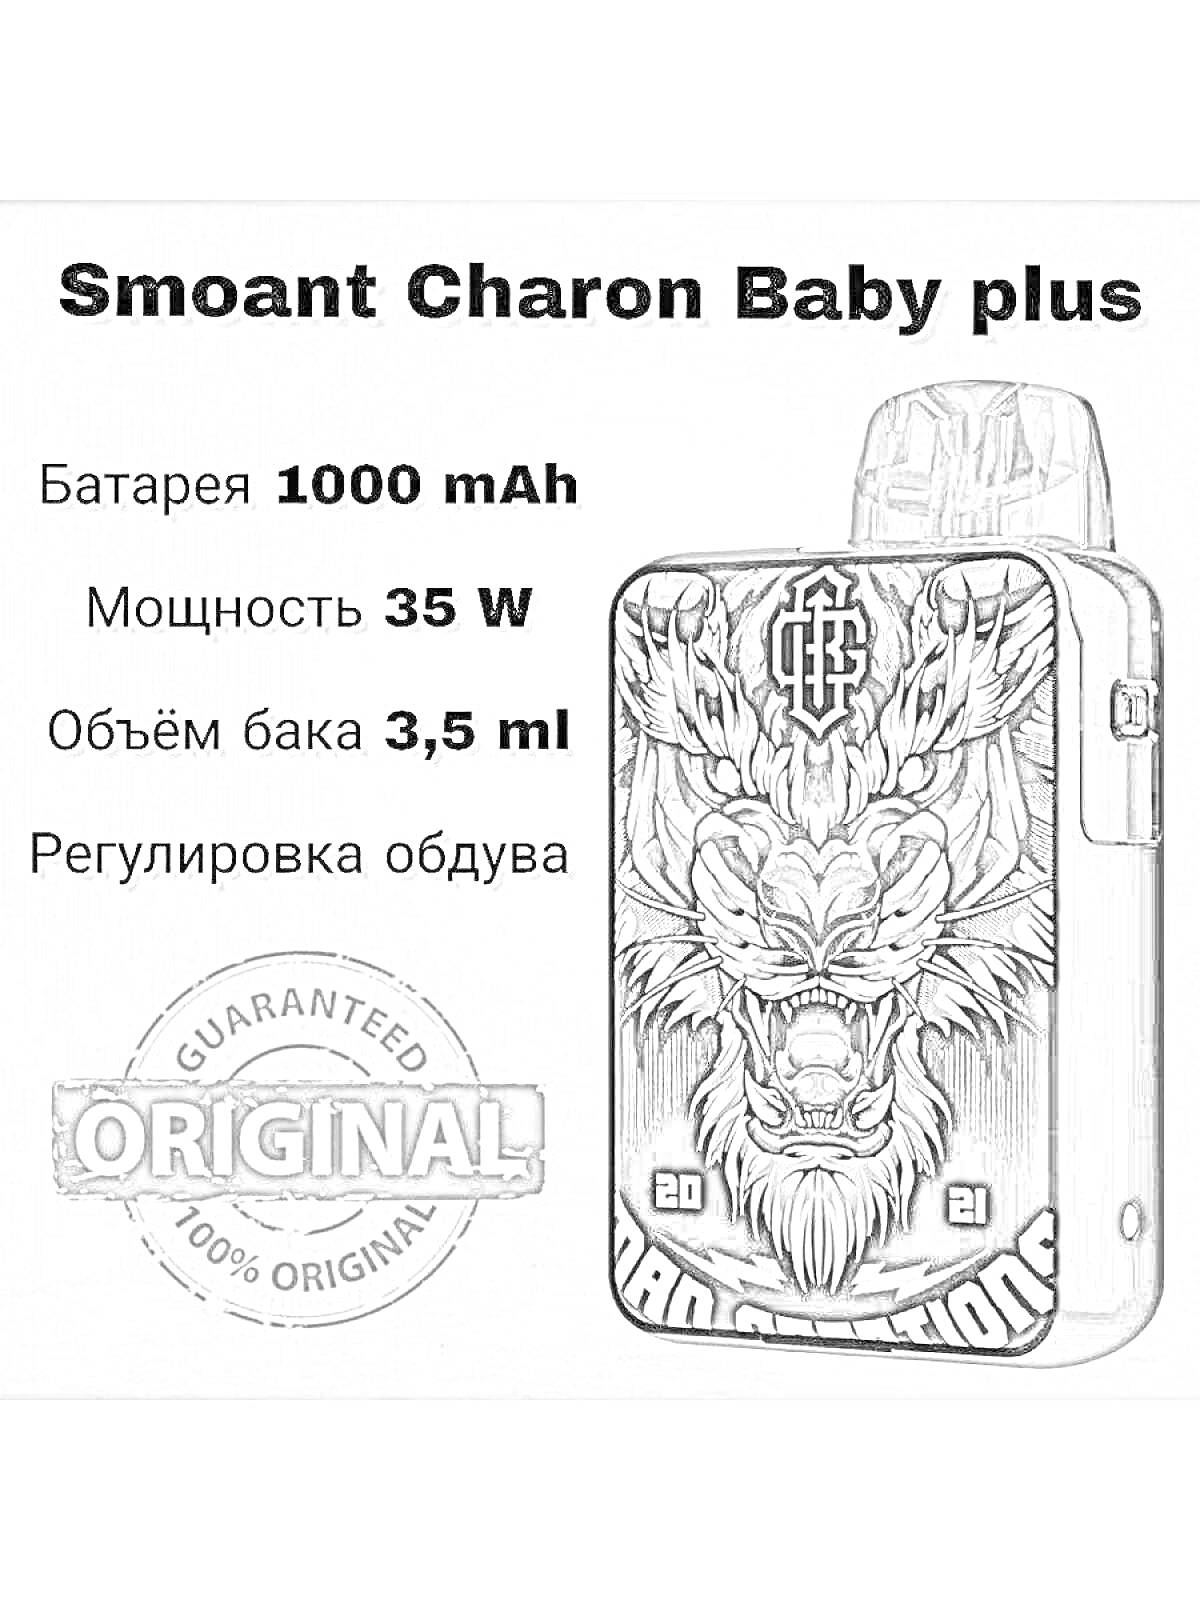 Электронная сигарета Smoant Charon Baby Plus с батареей 1000 mAh, мощностью 35 W, объемом бака 3,5 ml и регулировкой обдува